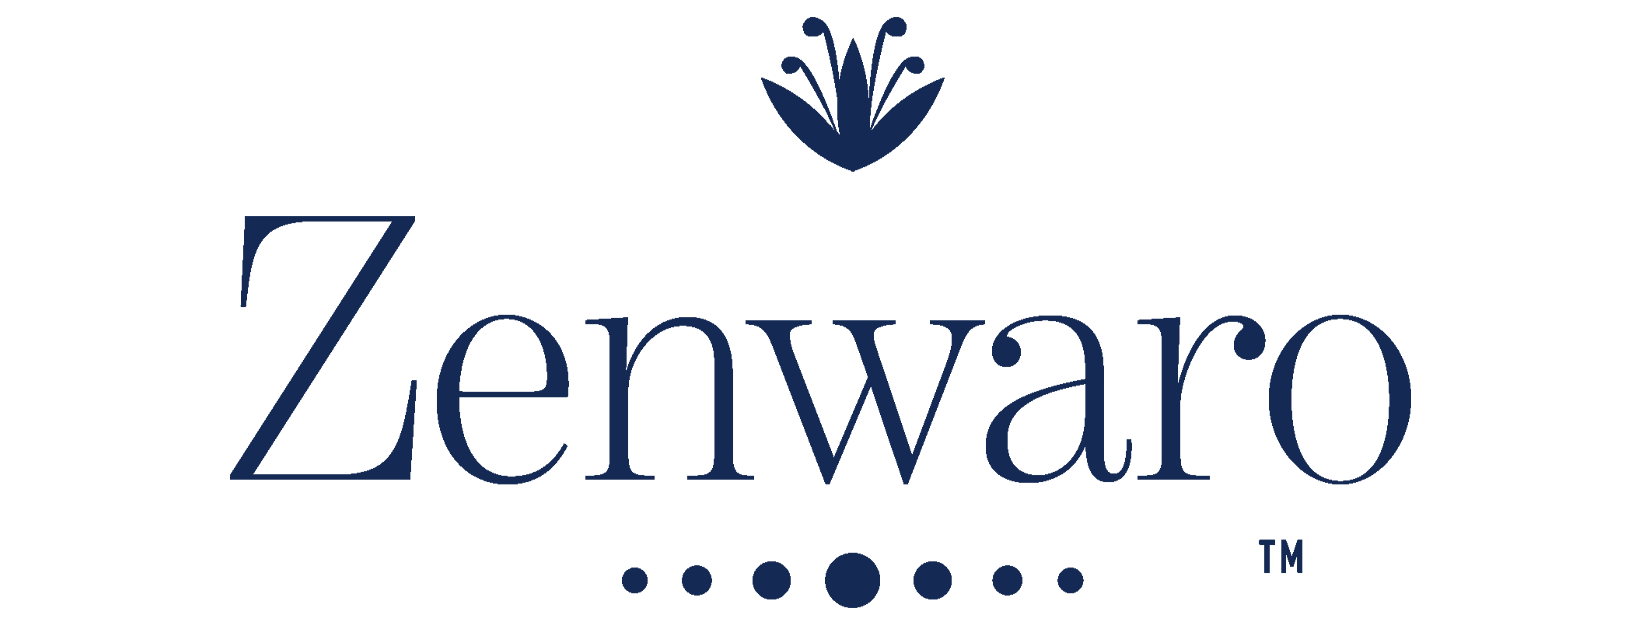 Zenwaro logo